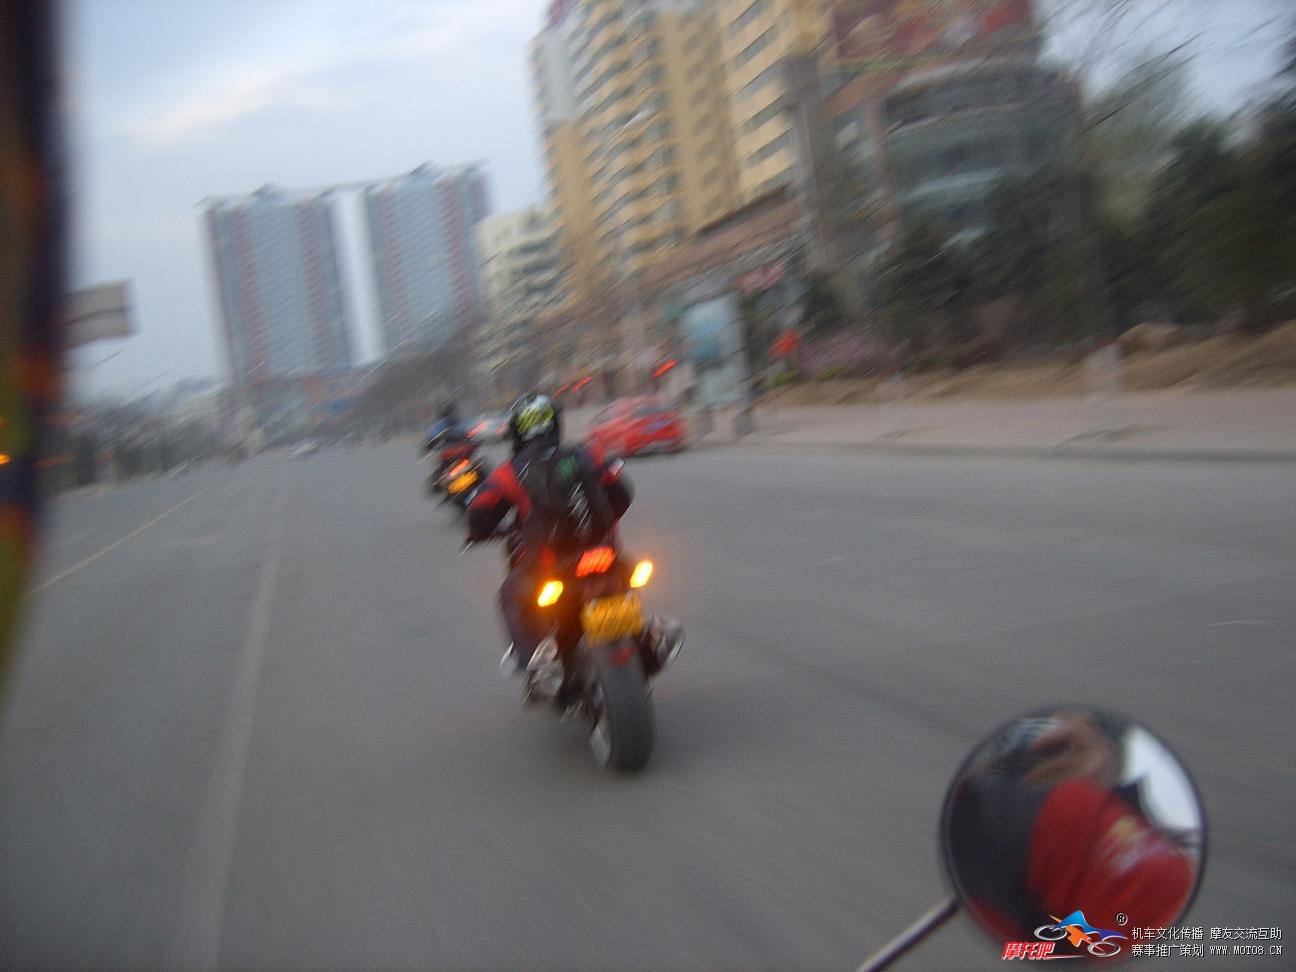 摩托吧-moto8-中国最具影响力的-摩托车论坛-清